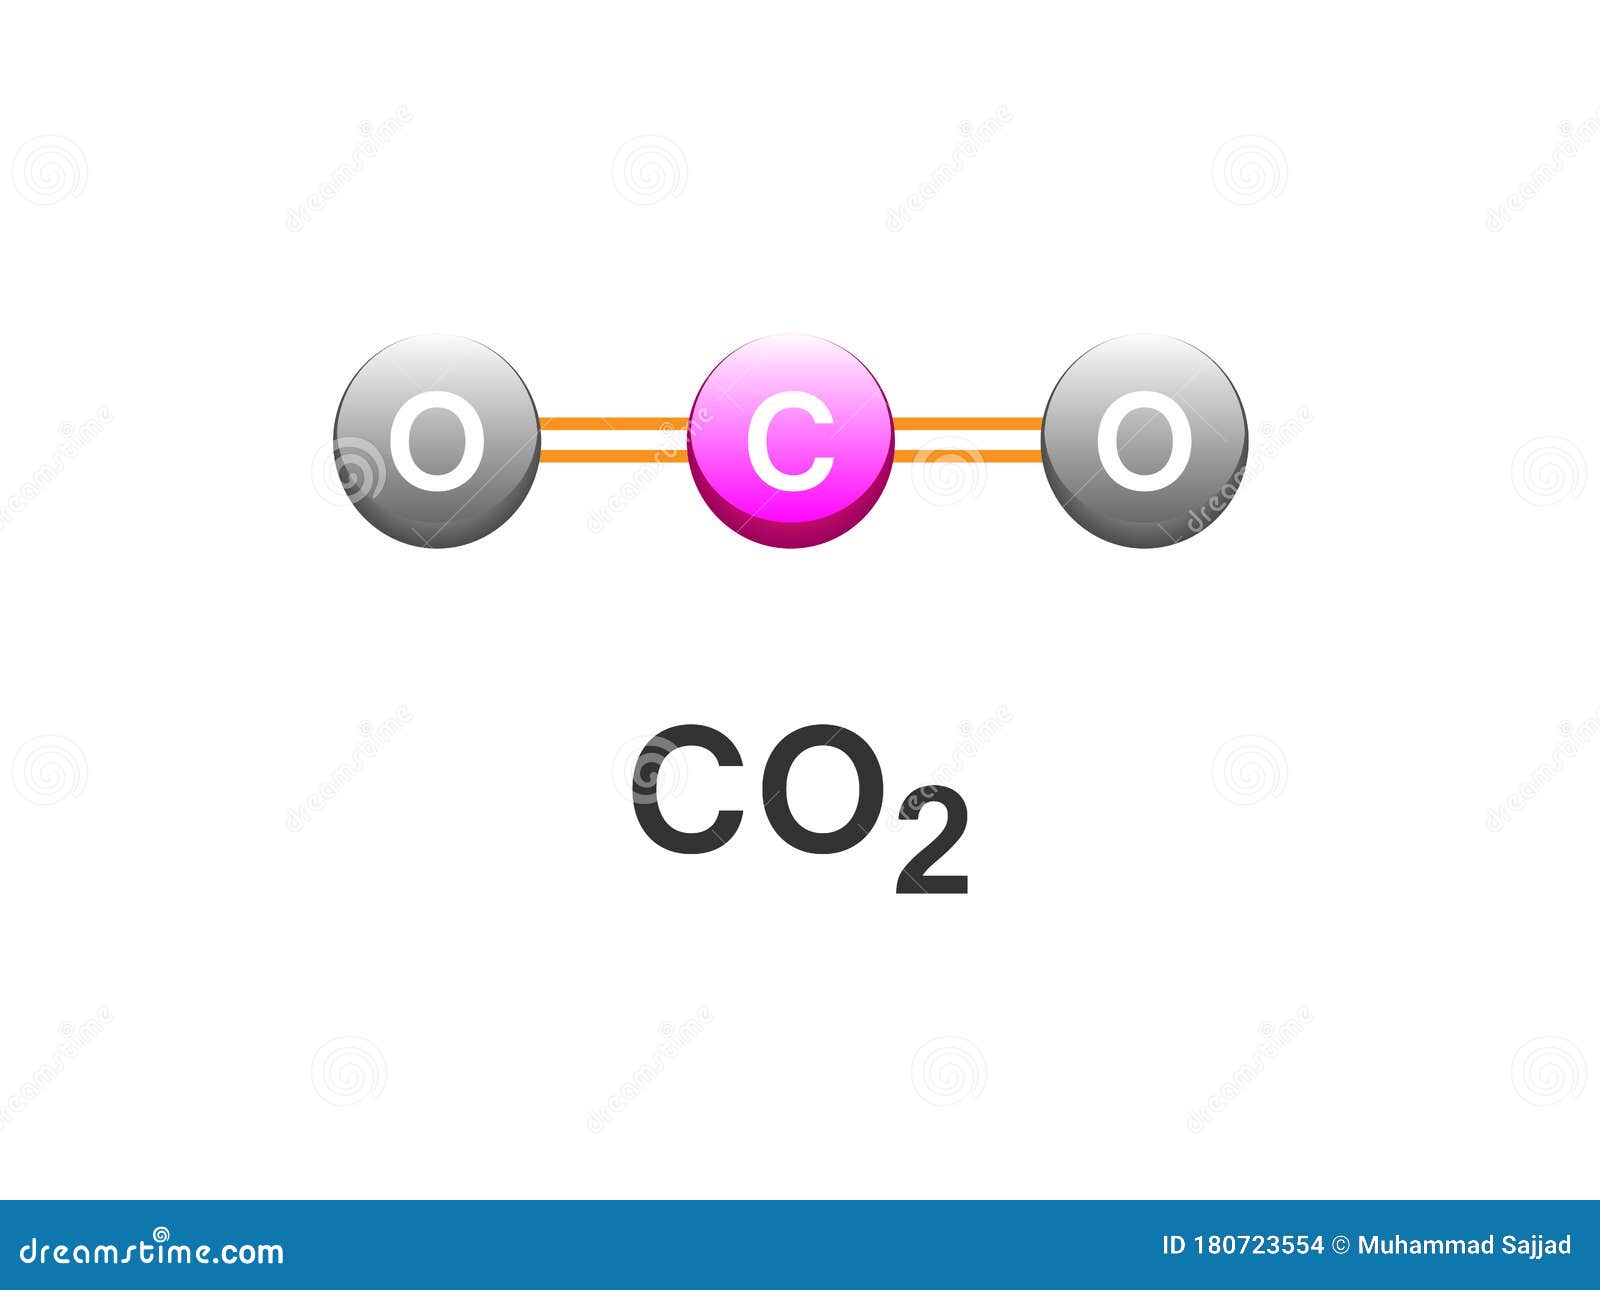 Формула углекислого газа в химии 8